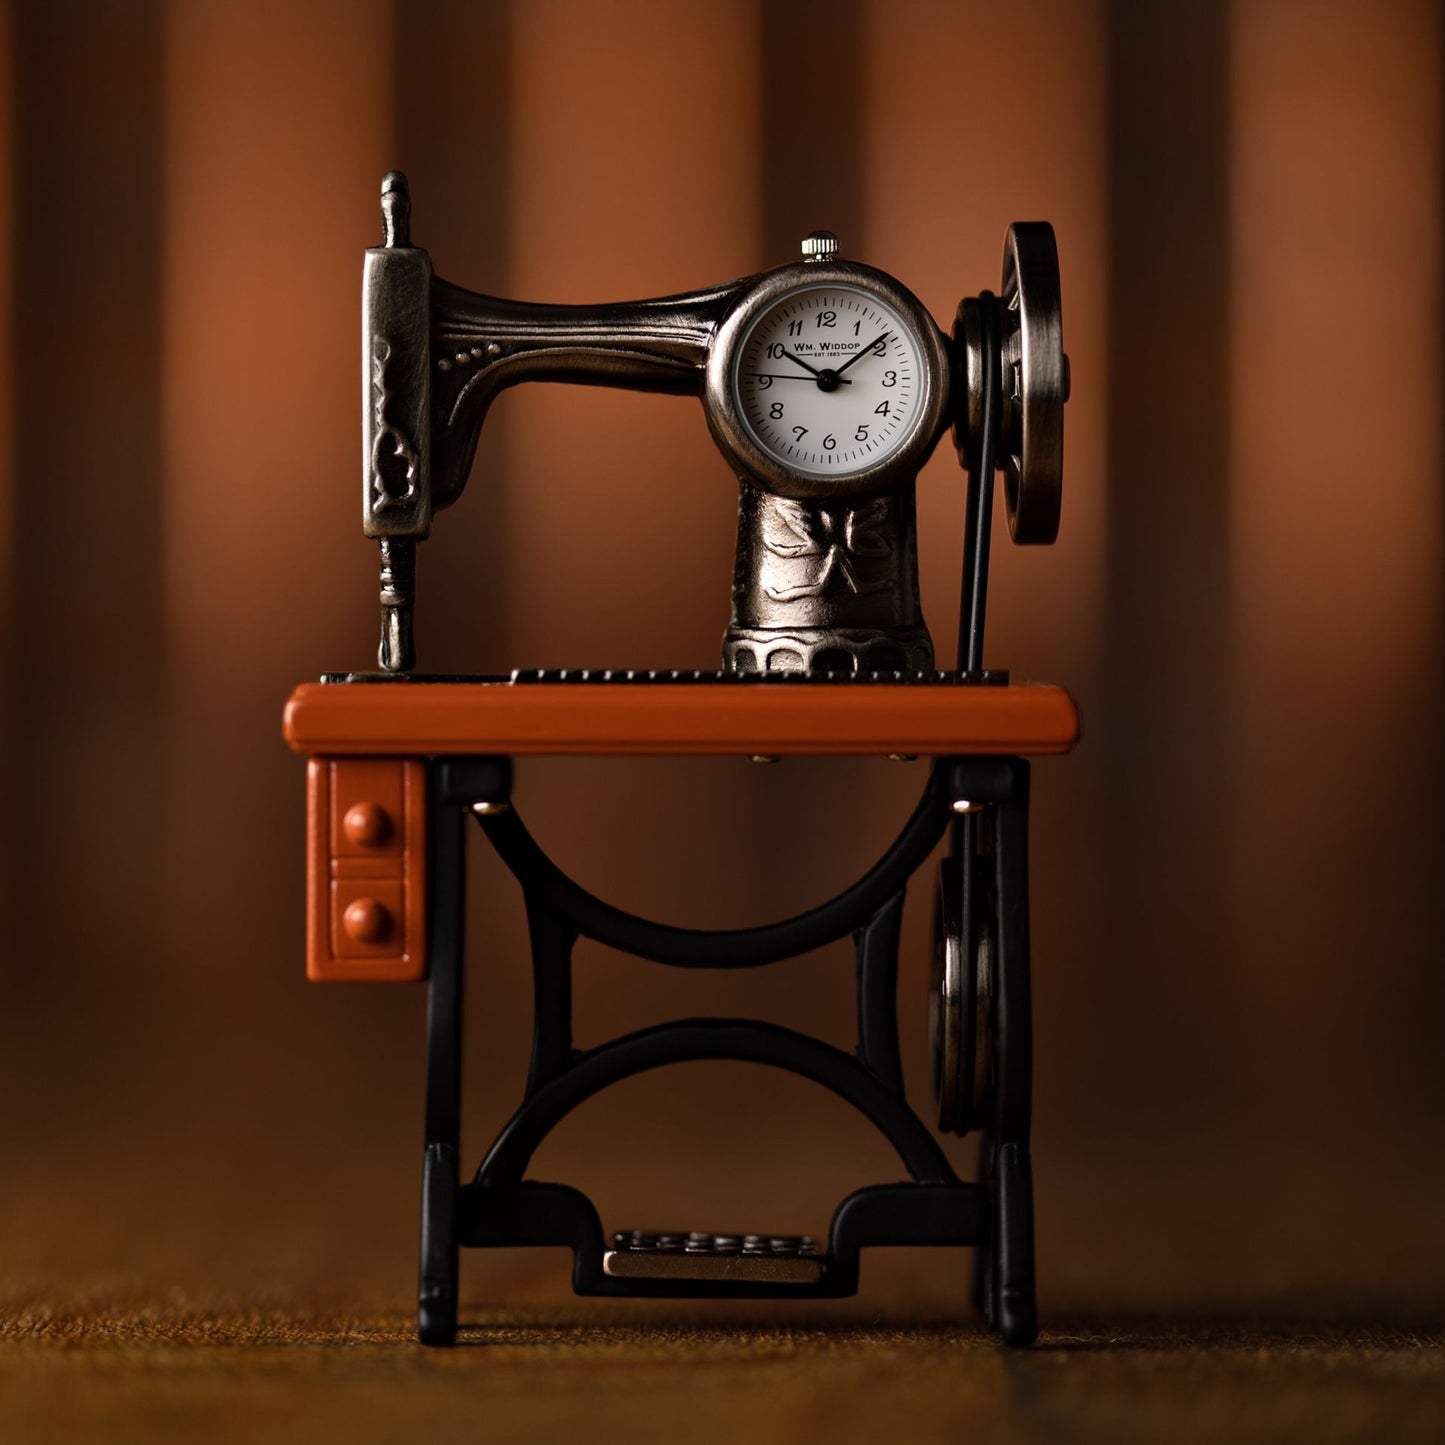 William Widdop Metal Miniature Clock - Sewing Machine